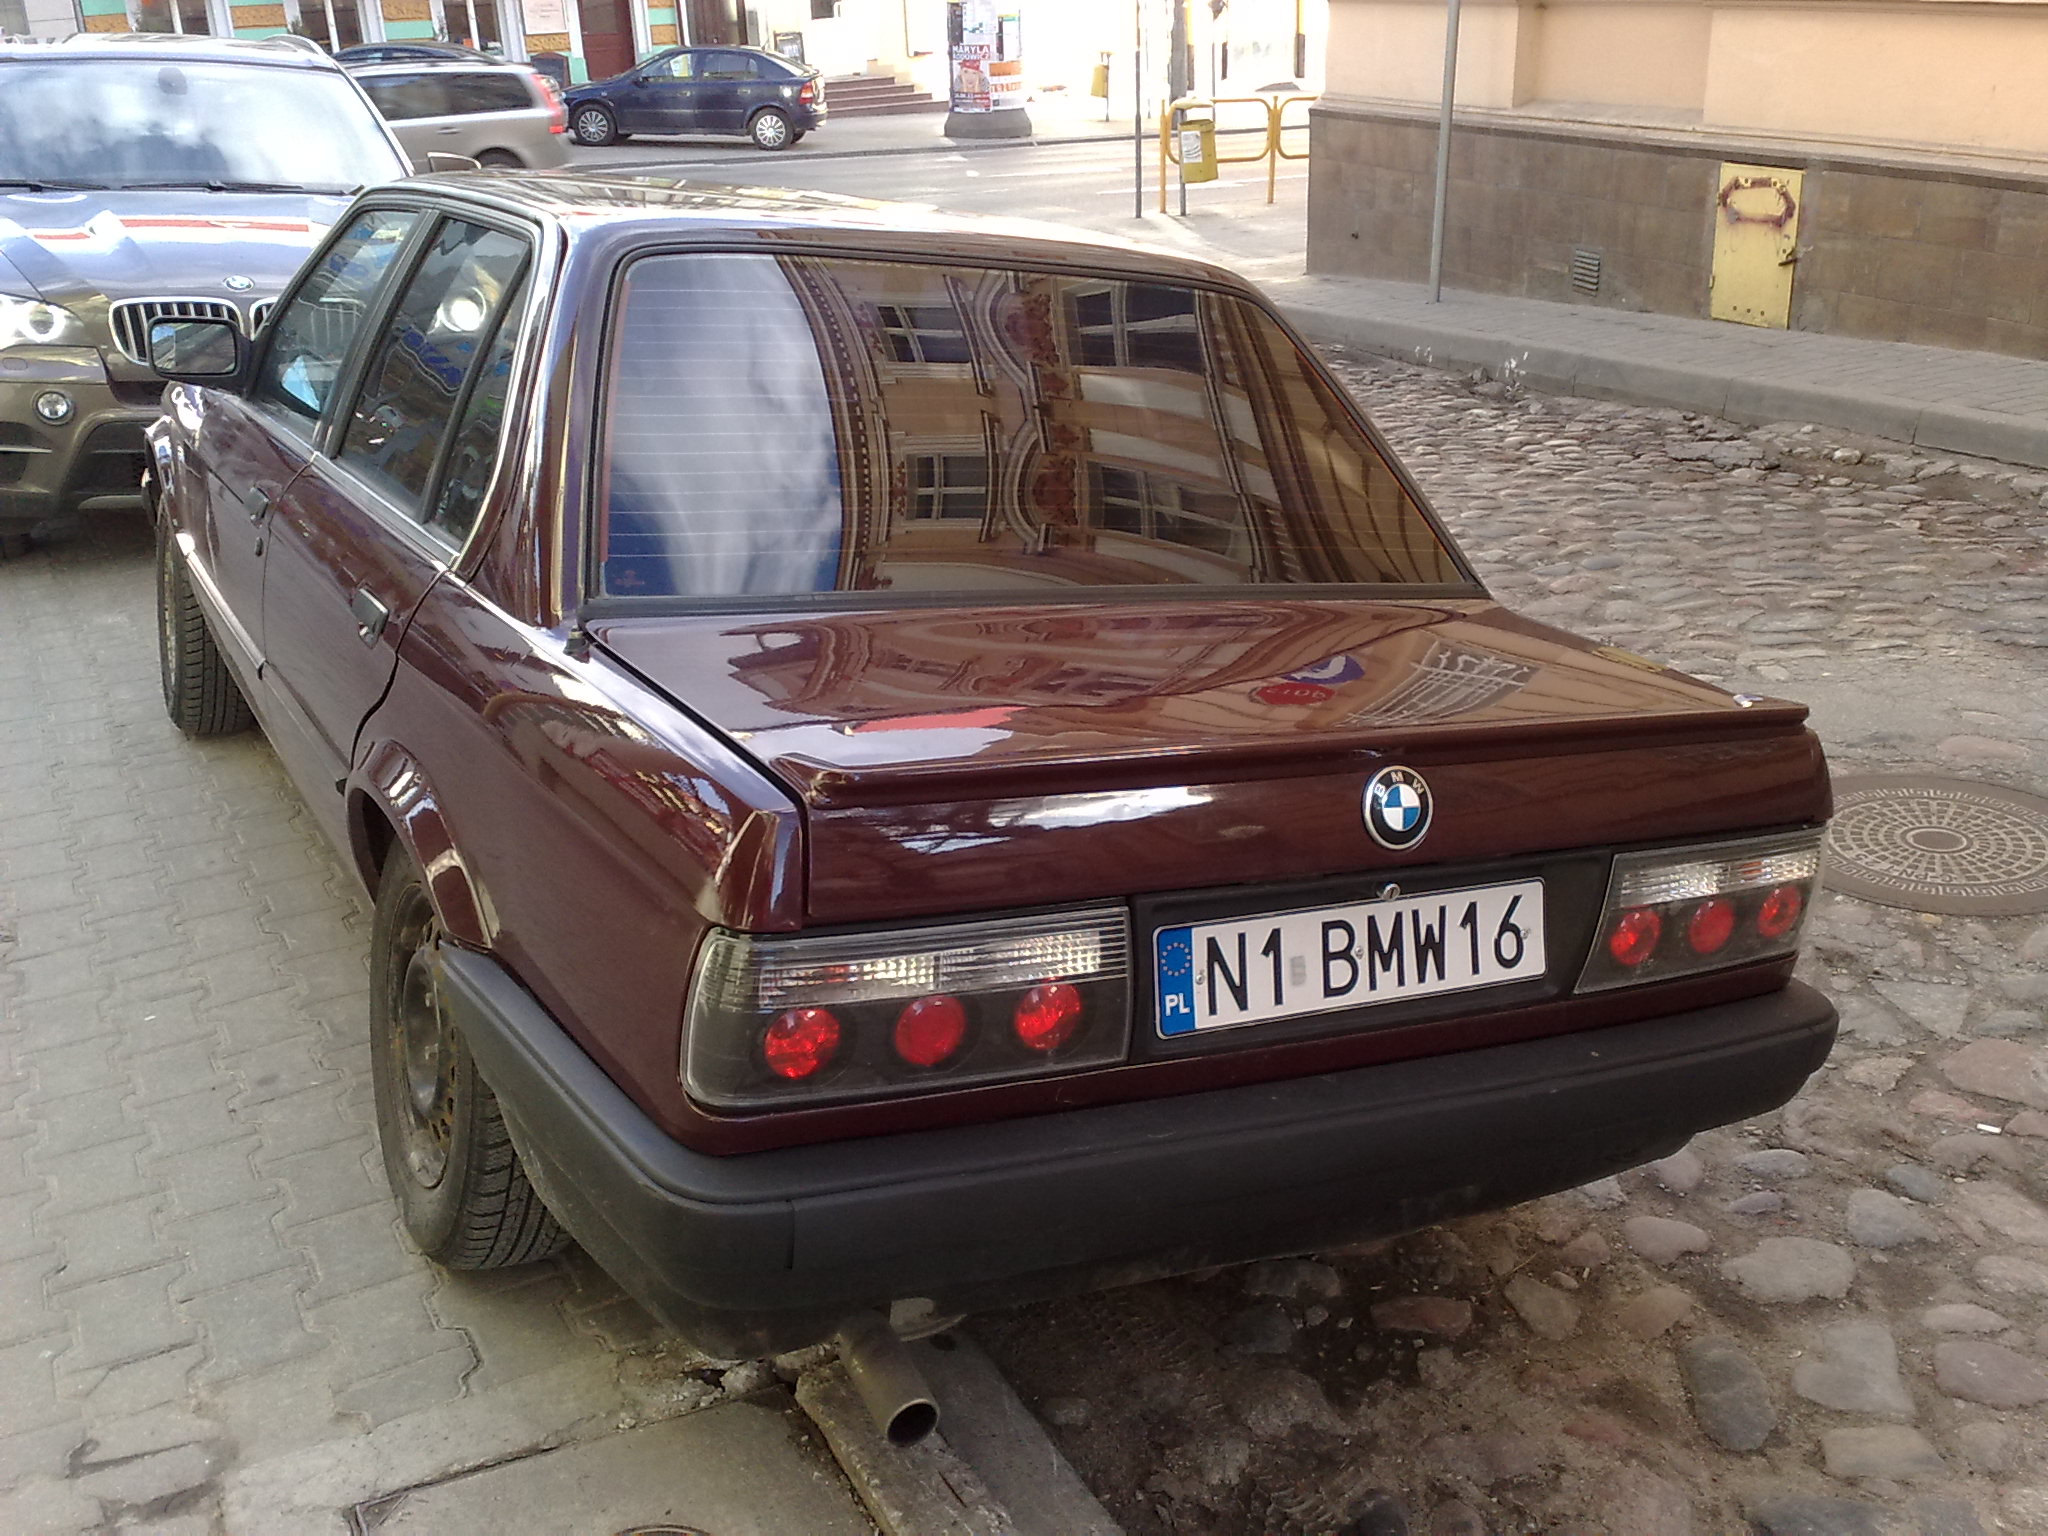 N 1 BMW 16